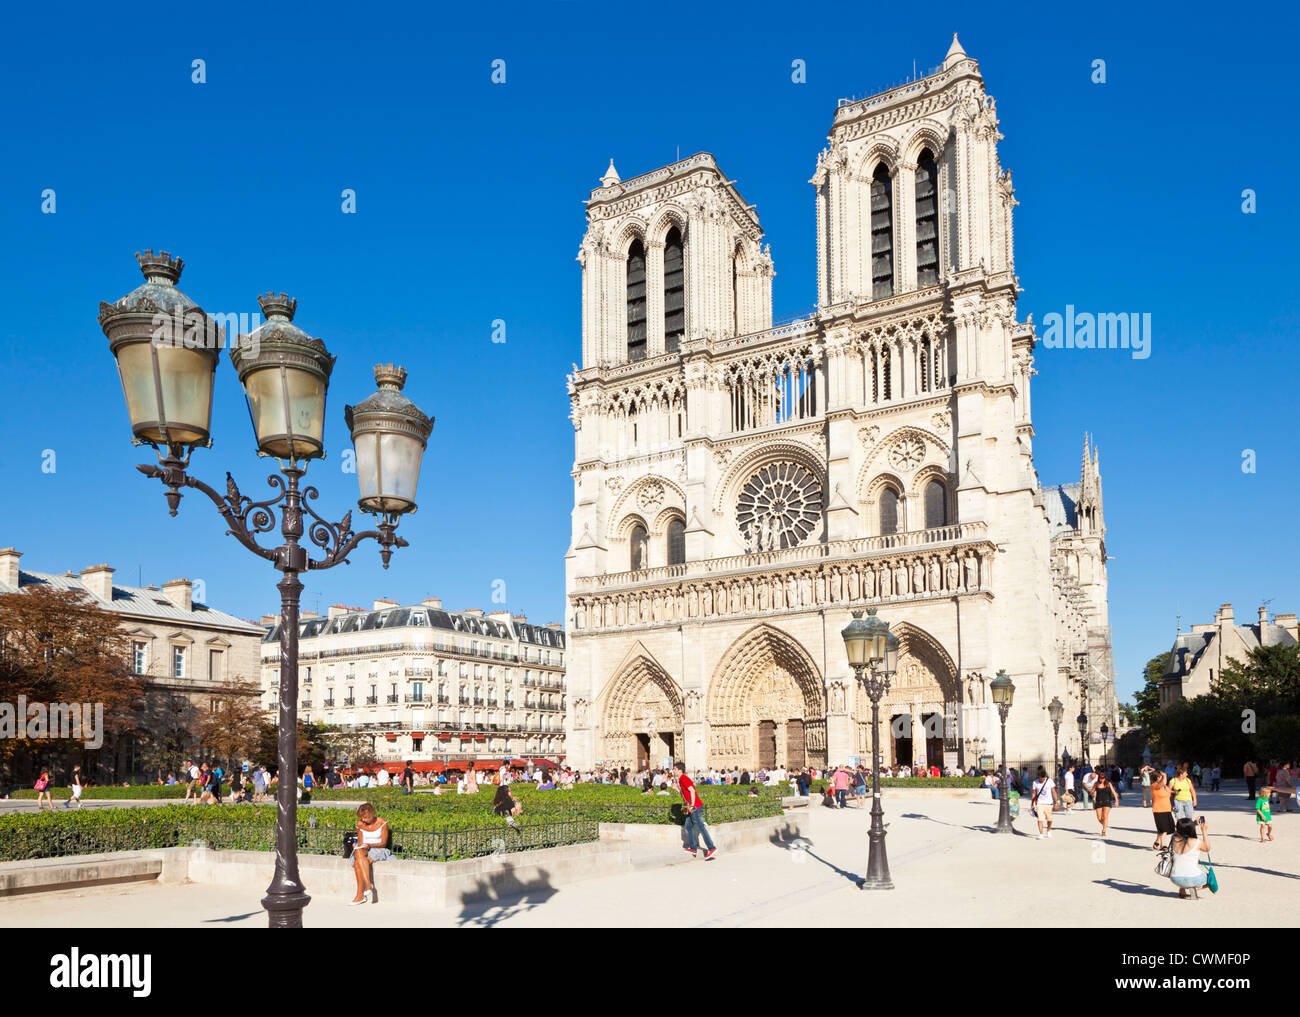 Façade de la cathédrale Notre Dame de Paris Ille de la Cite Paris France Europe de l'UE Banque D'Images